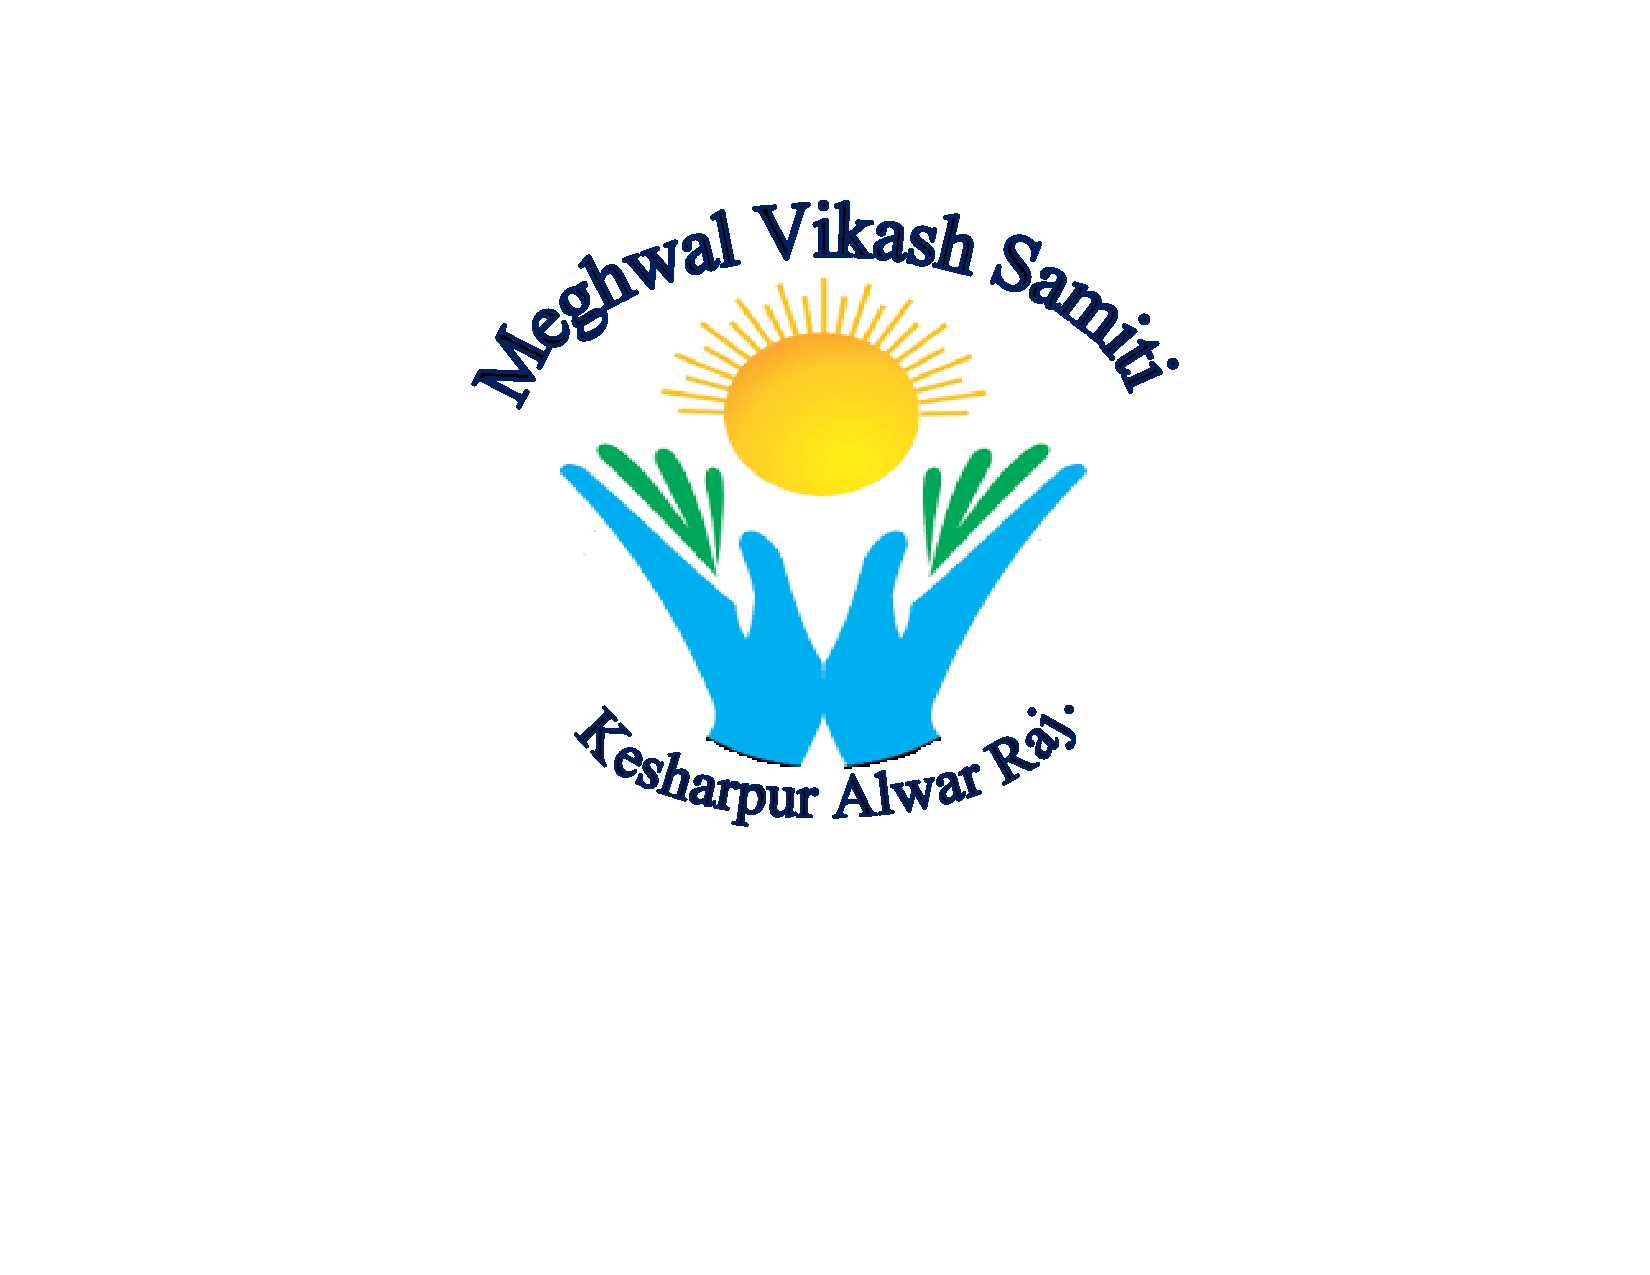 Meghwal Vikash Samiti Kesharpur Alwar